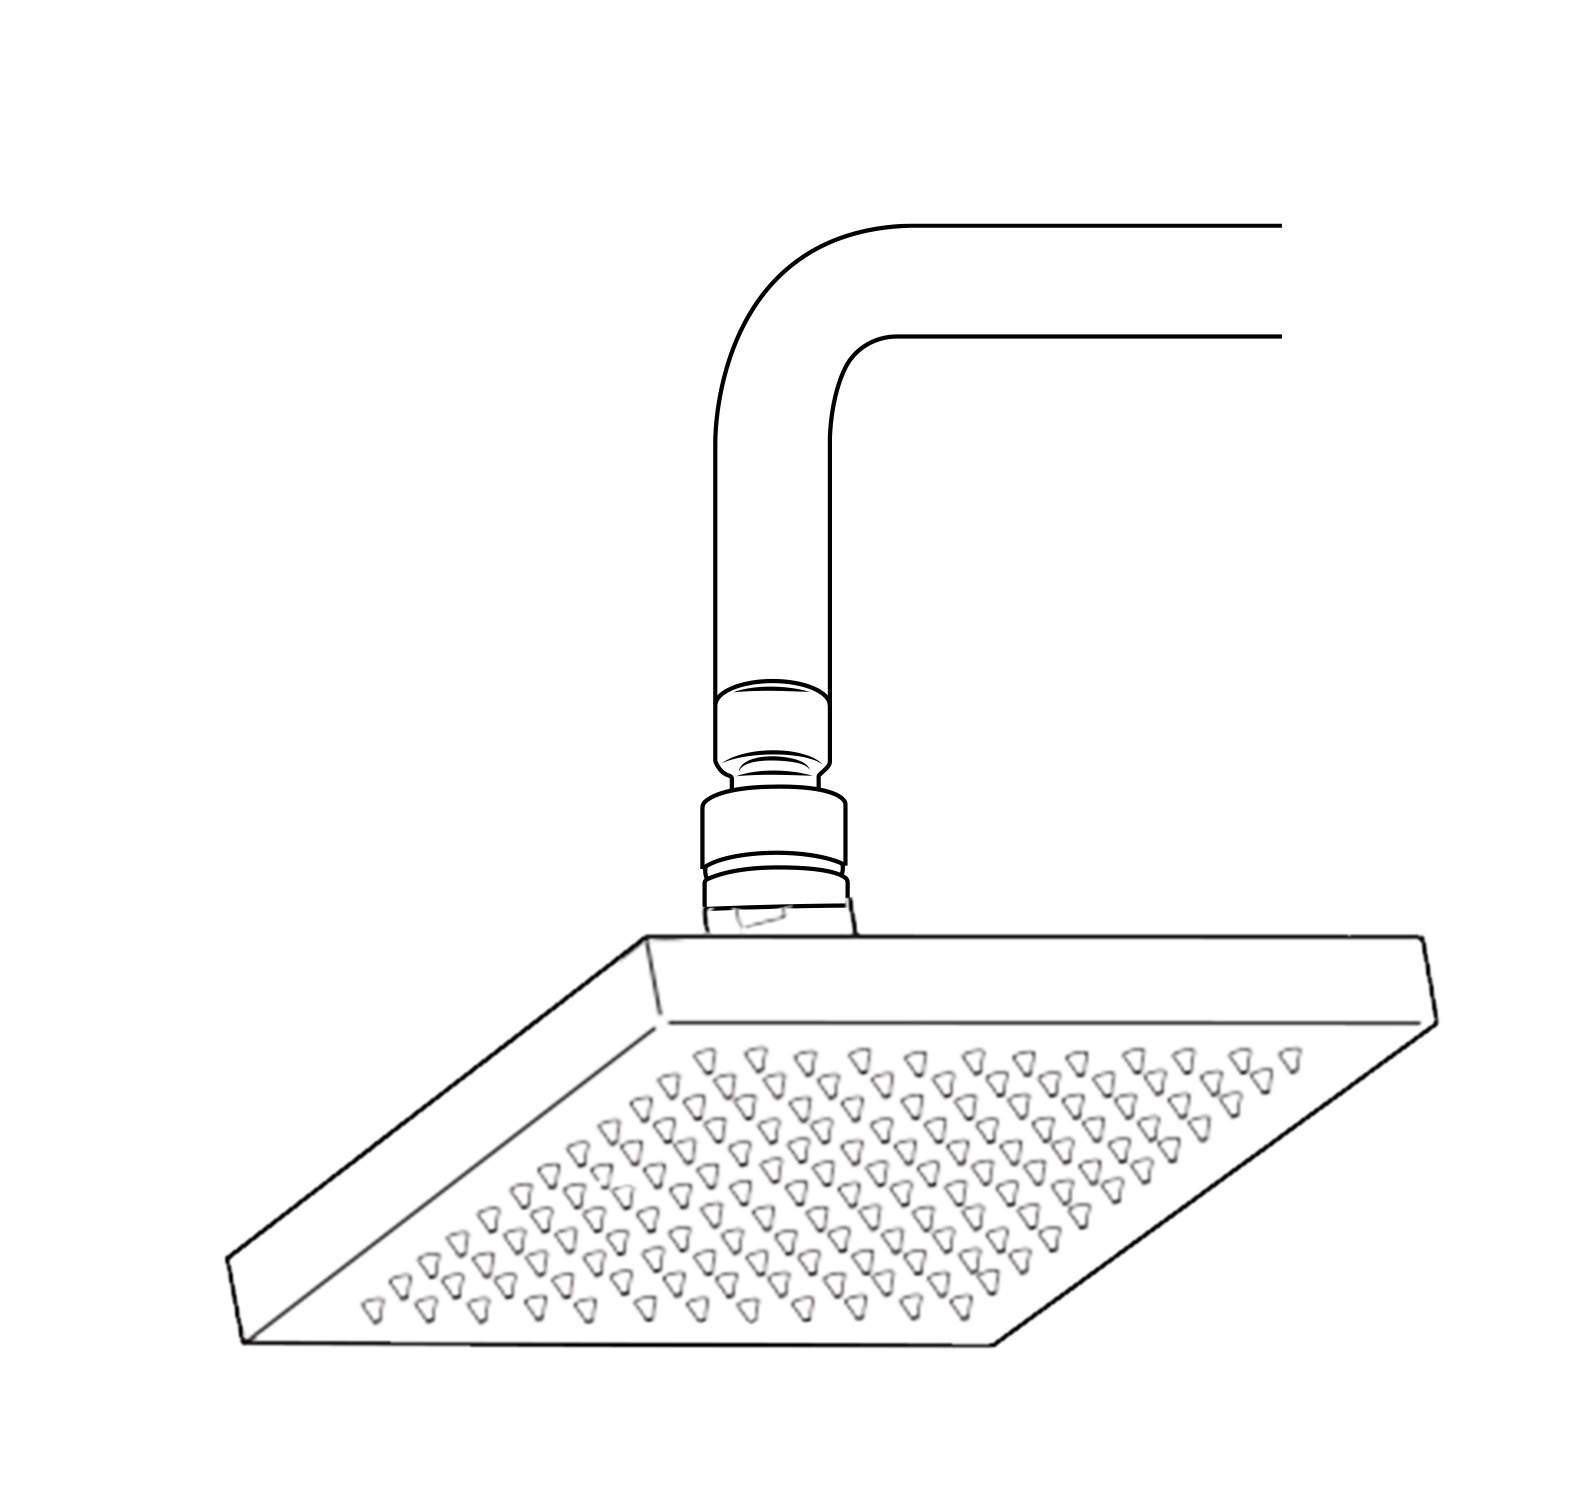 kisimixer Shower Mixer Bar Modern Chrome Wall Mounted Shower Faucet Manual 